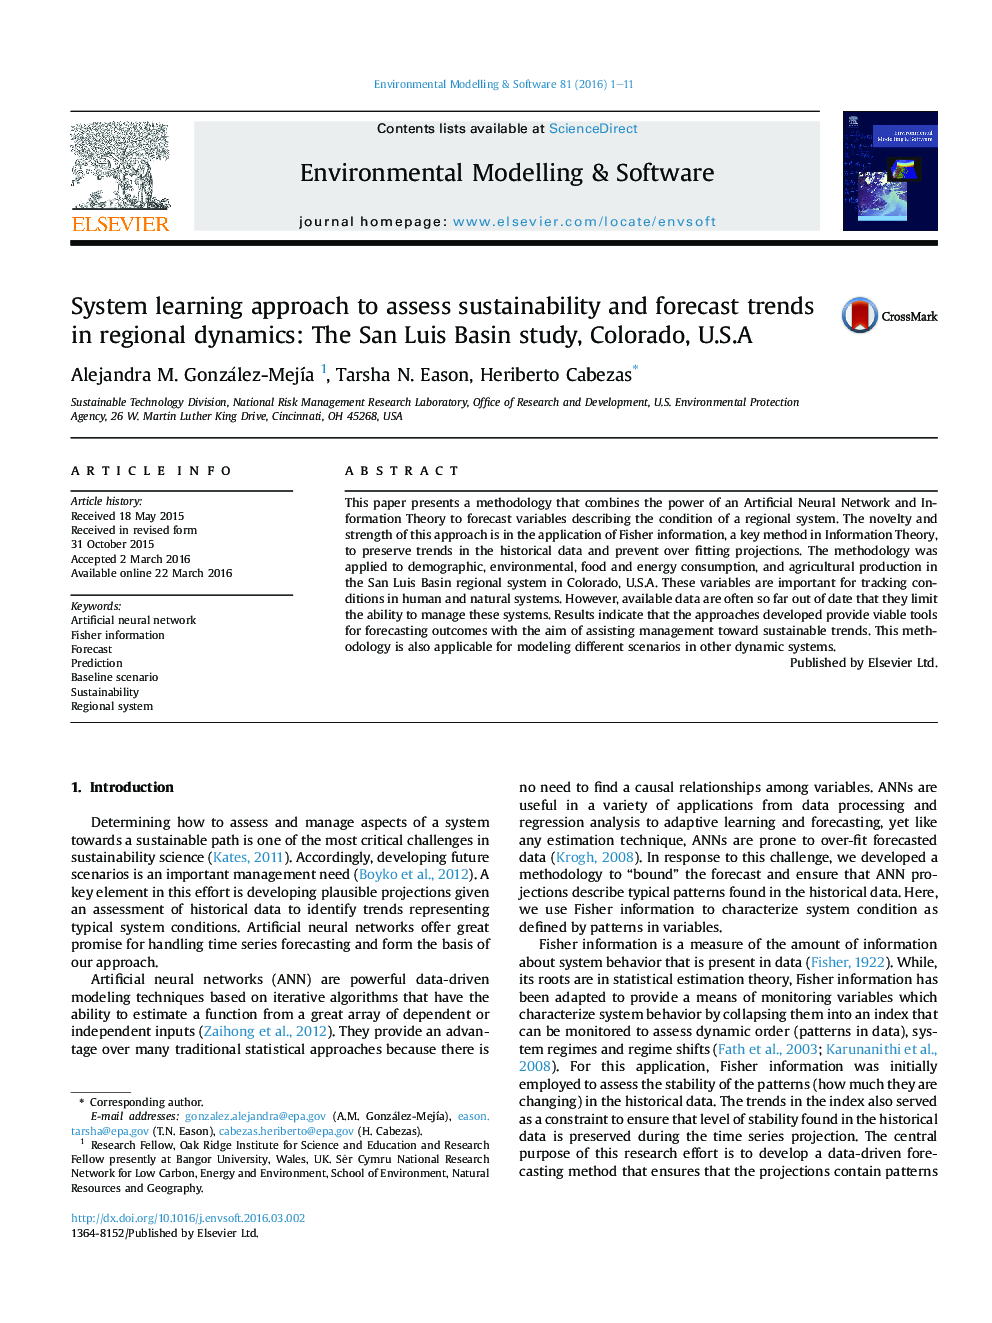 رویکرد یادگیری سیستم برای ارزیابی پایداری و روند پیش بینی در پویایی منطقه ای: مطالعه حوضه سن لوئیس، کلرادو، U.S.A